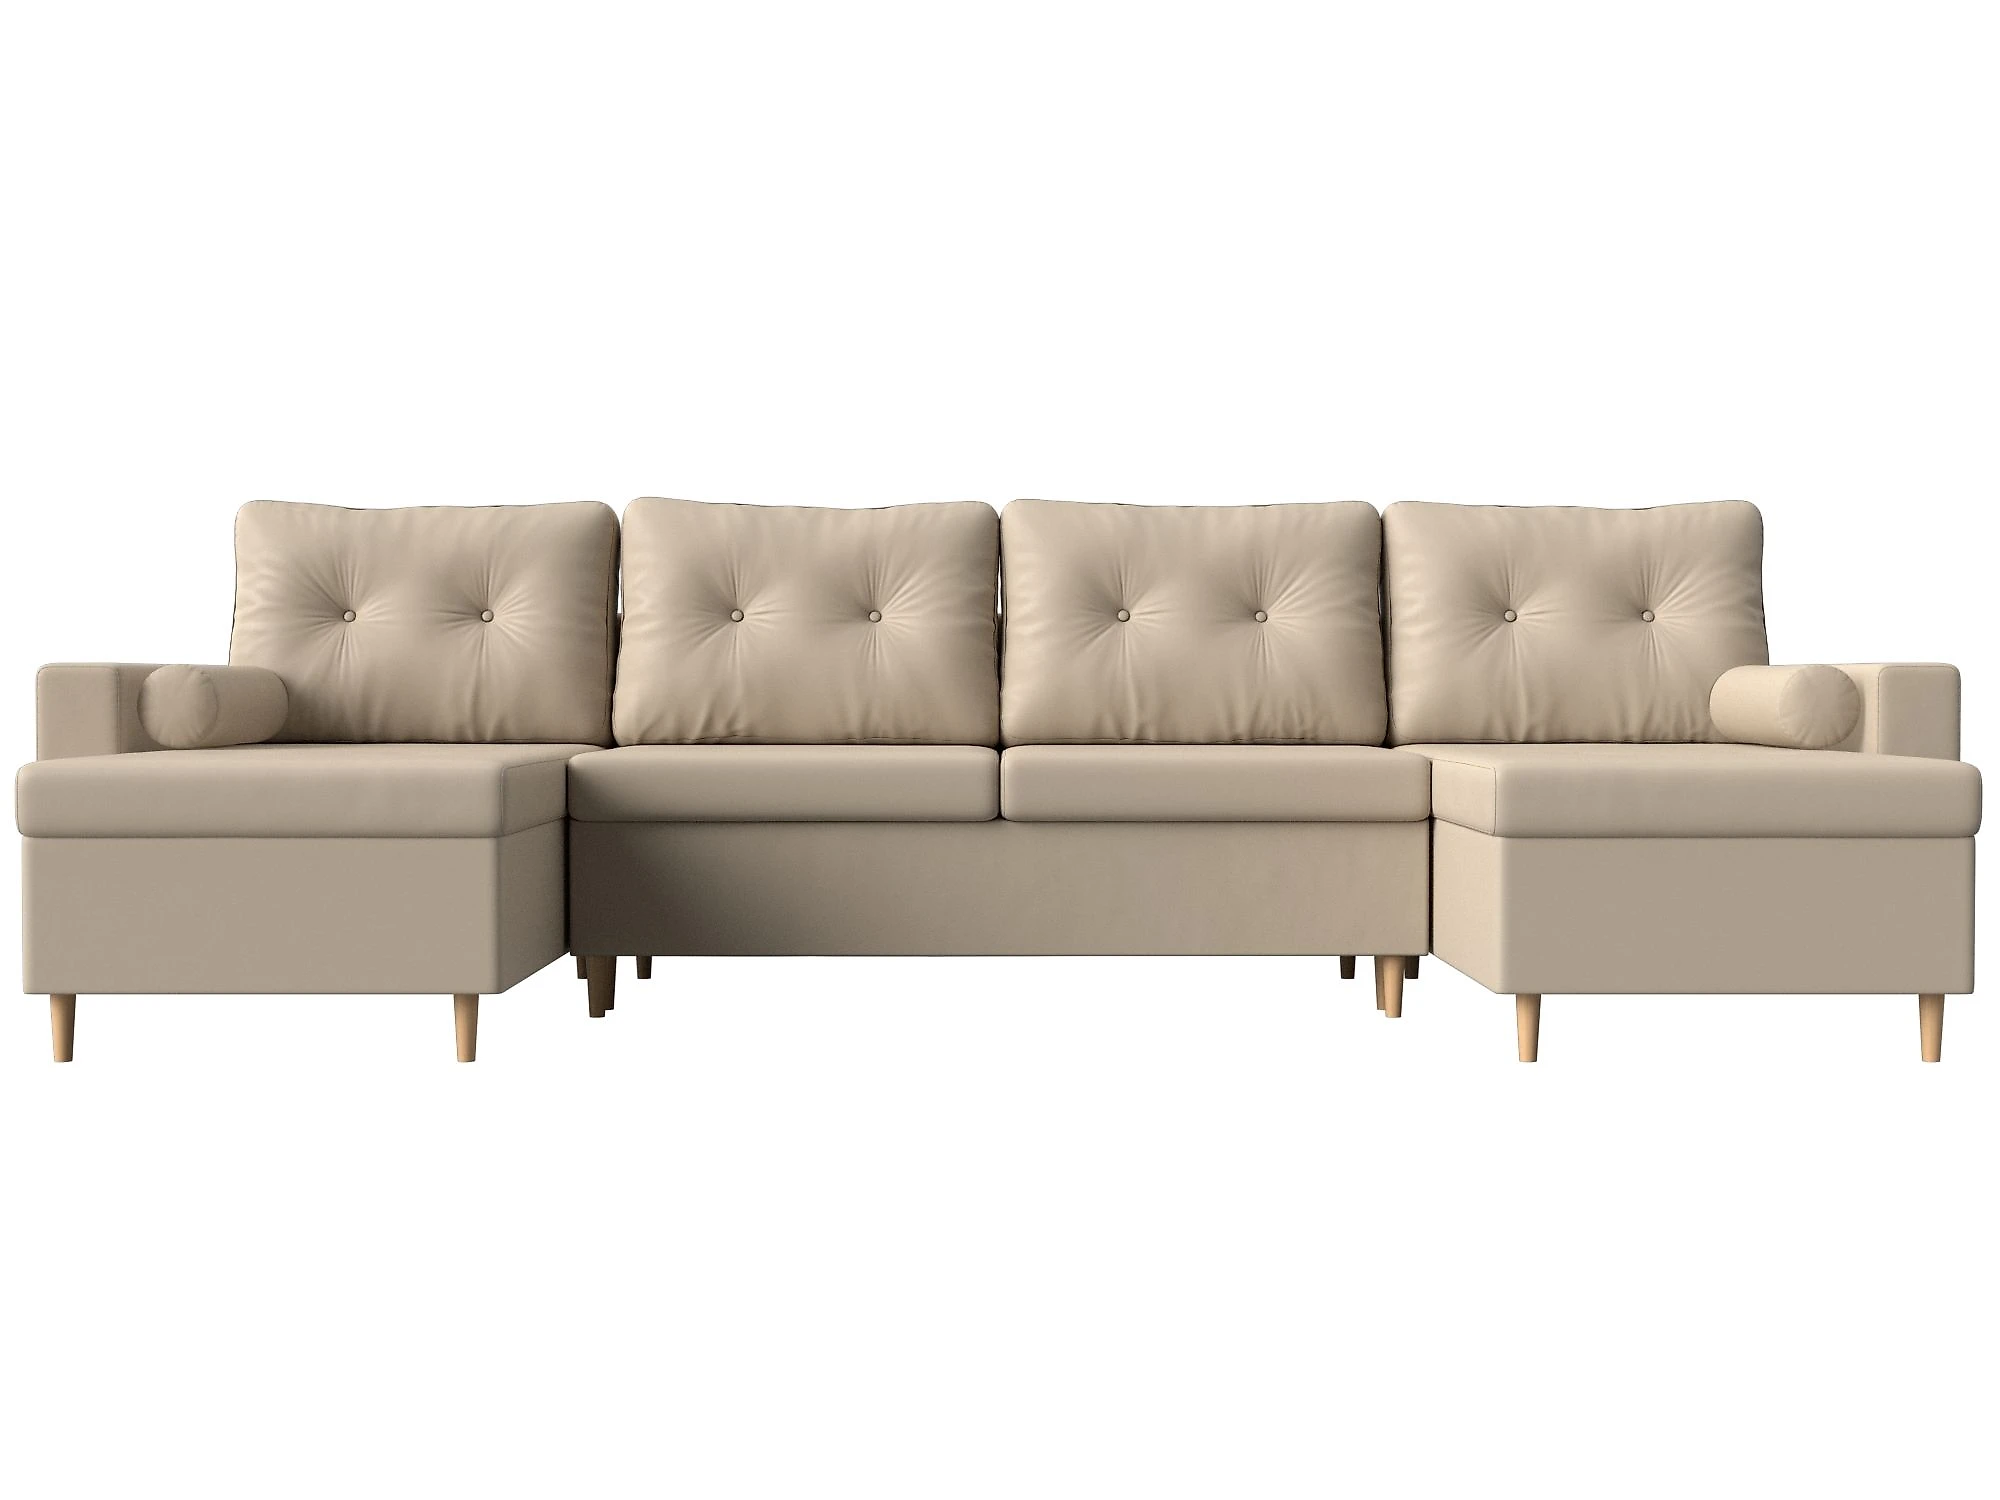  кожаный диван еврокнижка Белфаст-П Дизайн 6